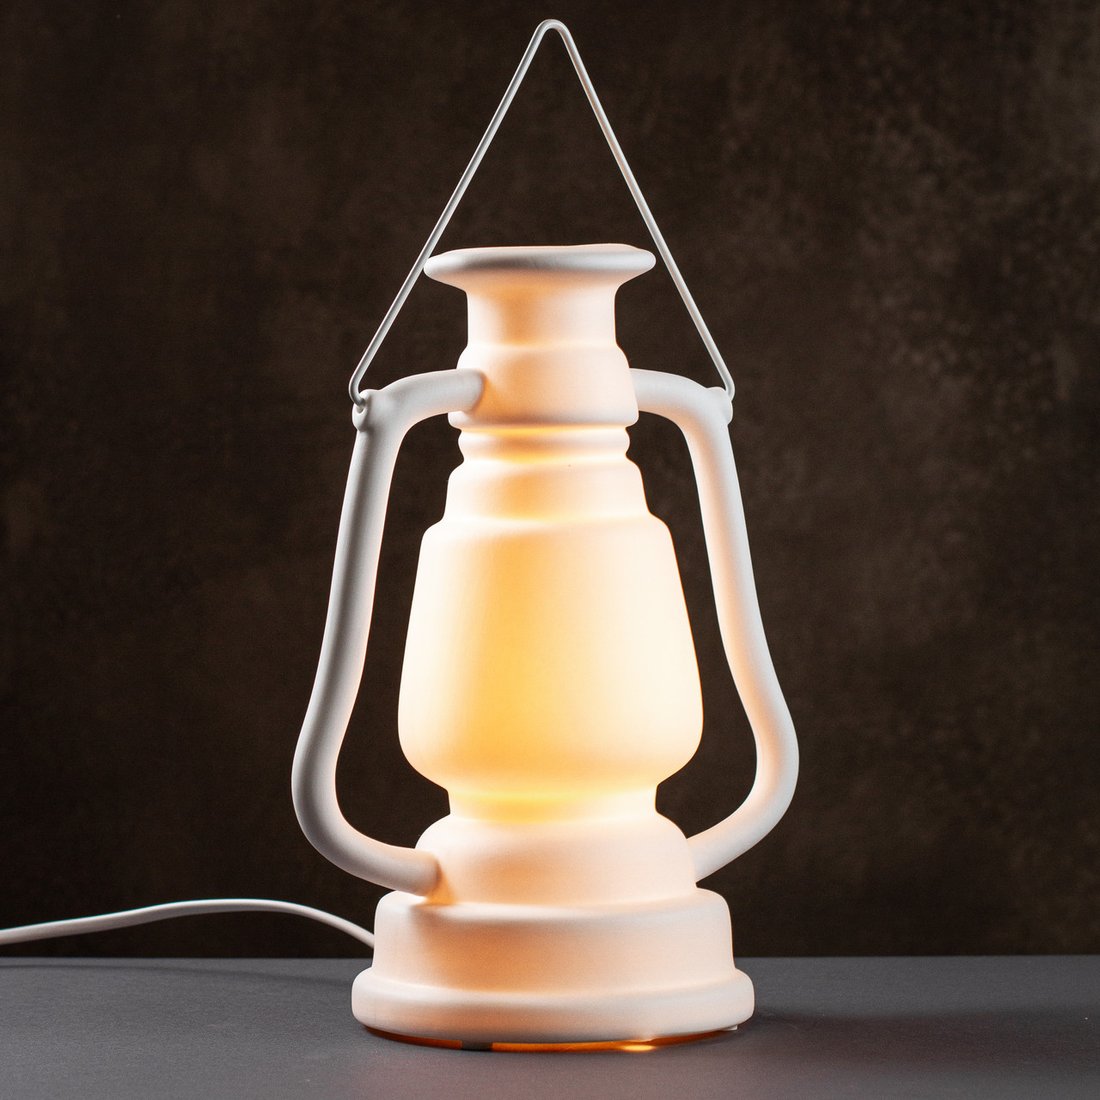 Настольная фарфоровая лампа-ночник "Винтажная лампа" Chakra Home, с регулировкой цвета освещения 16 цветов!